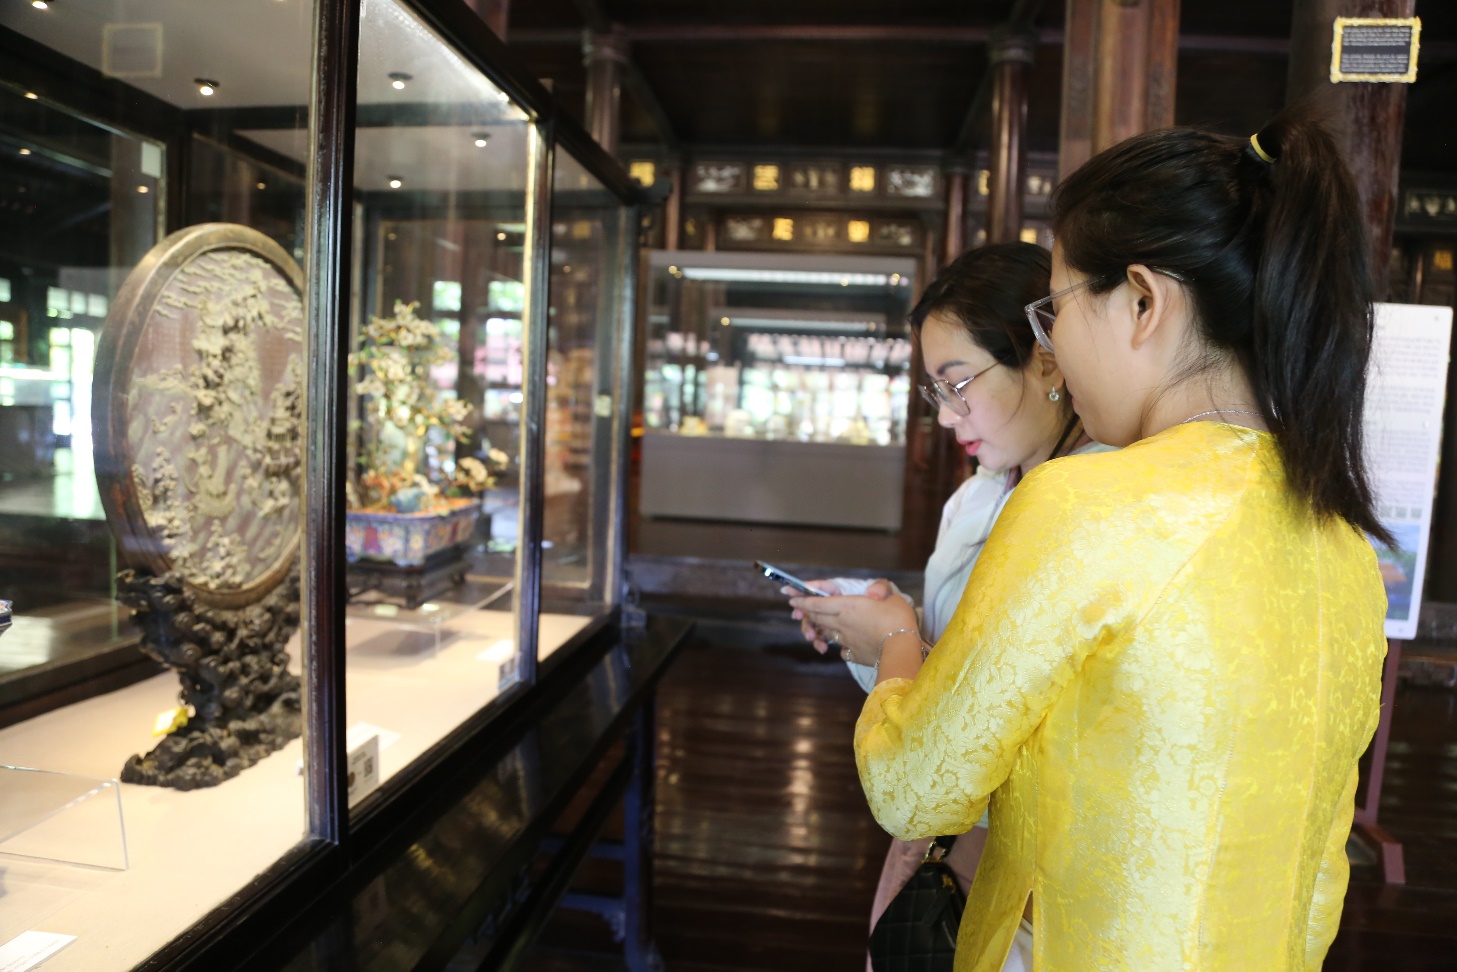 ‘Mục sở thị’ 10 cổ vật triều Nguyễn được định danh số - 2